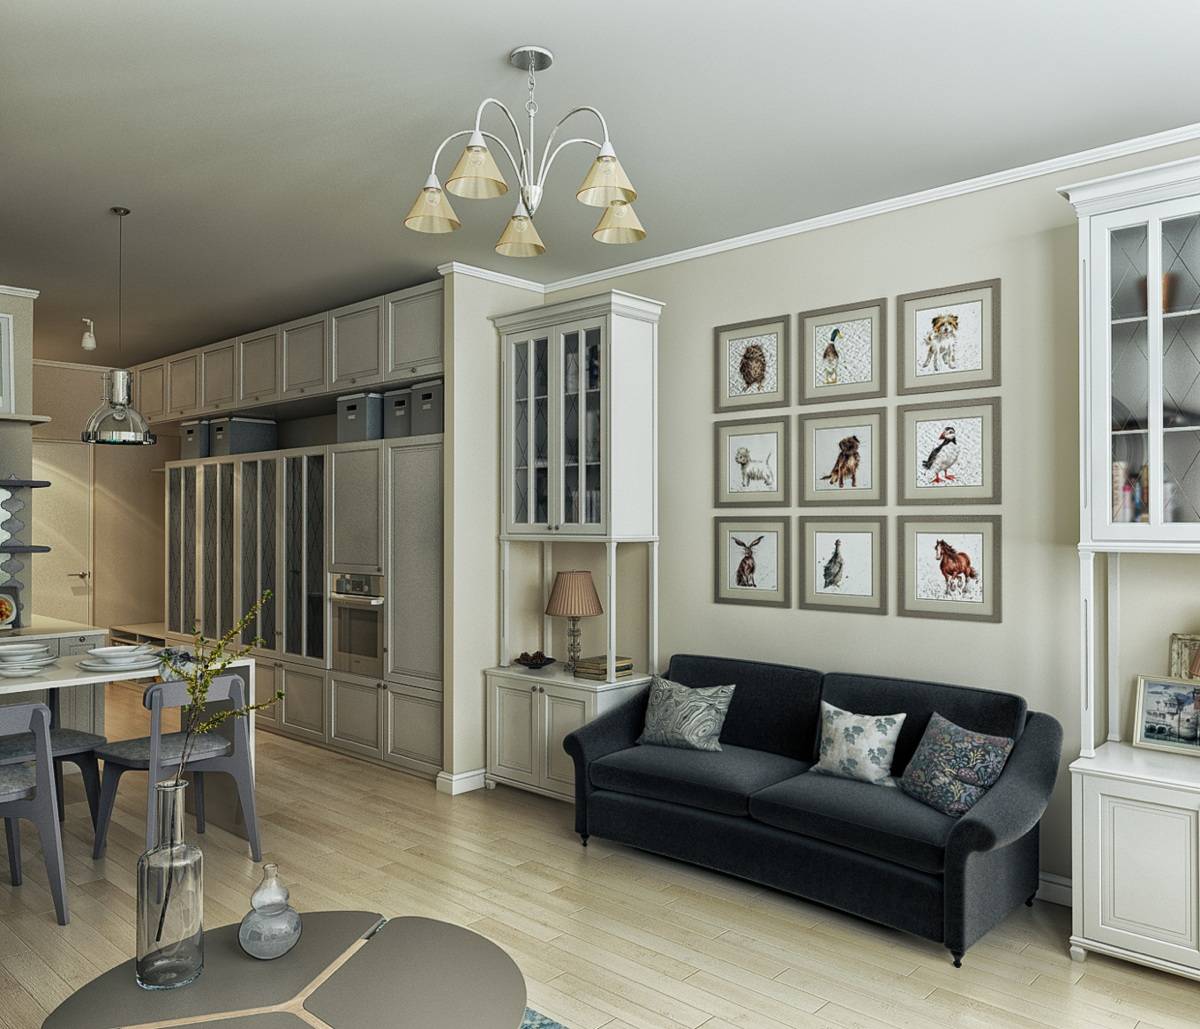 Квартира-студия в стиле прованс: характерные черты и особенности оформления интерьера, как обустроить кухню-гостиную, как разделить пространство, фото дизайна